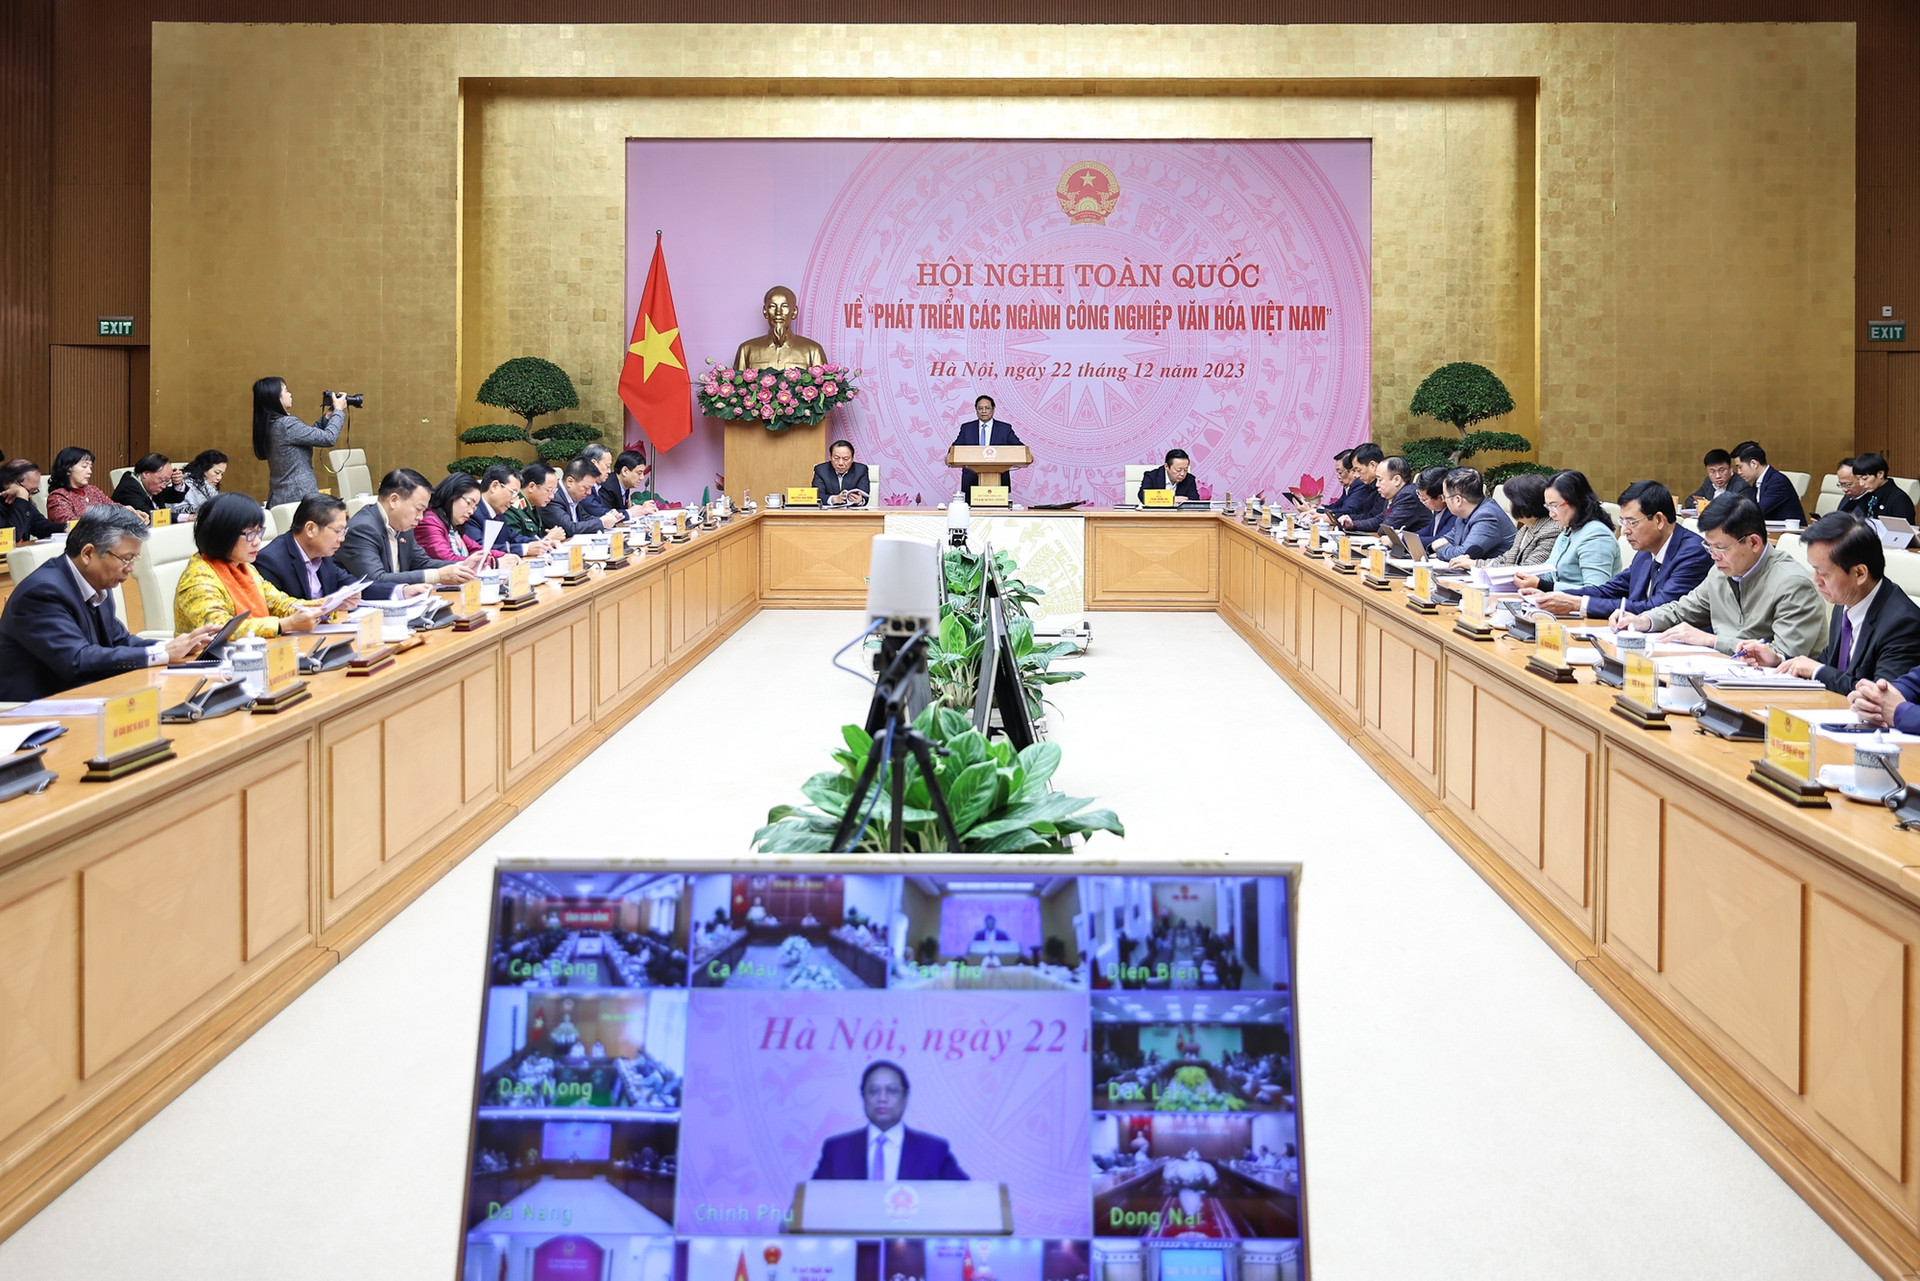 Hội nghị đầu tiên, có ý nghĩa đặc biệt quan trọng về phát triển các ngành công nghiệp văn hóa Việt Nam- Ảnh 1.